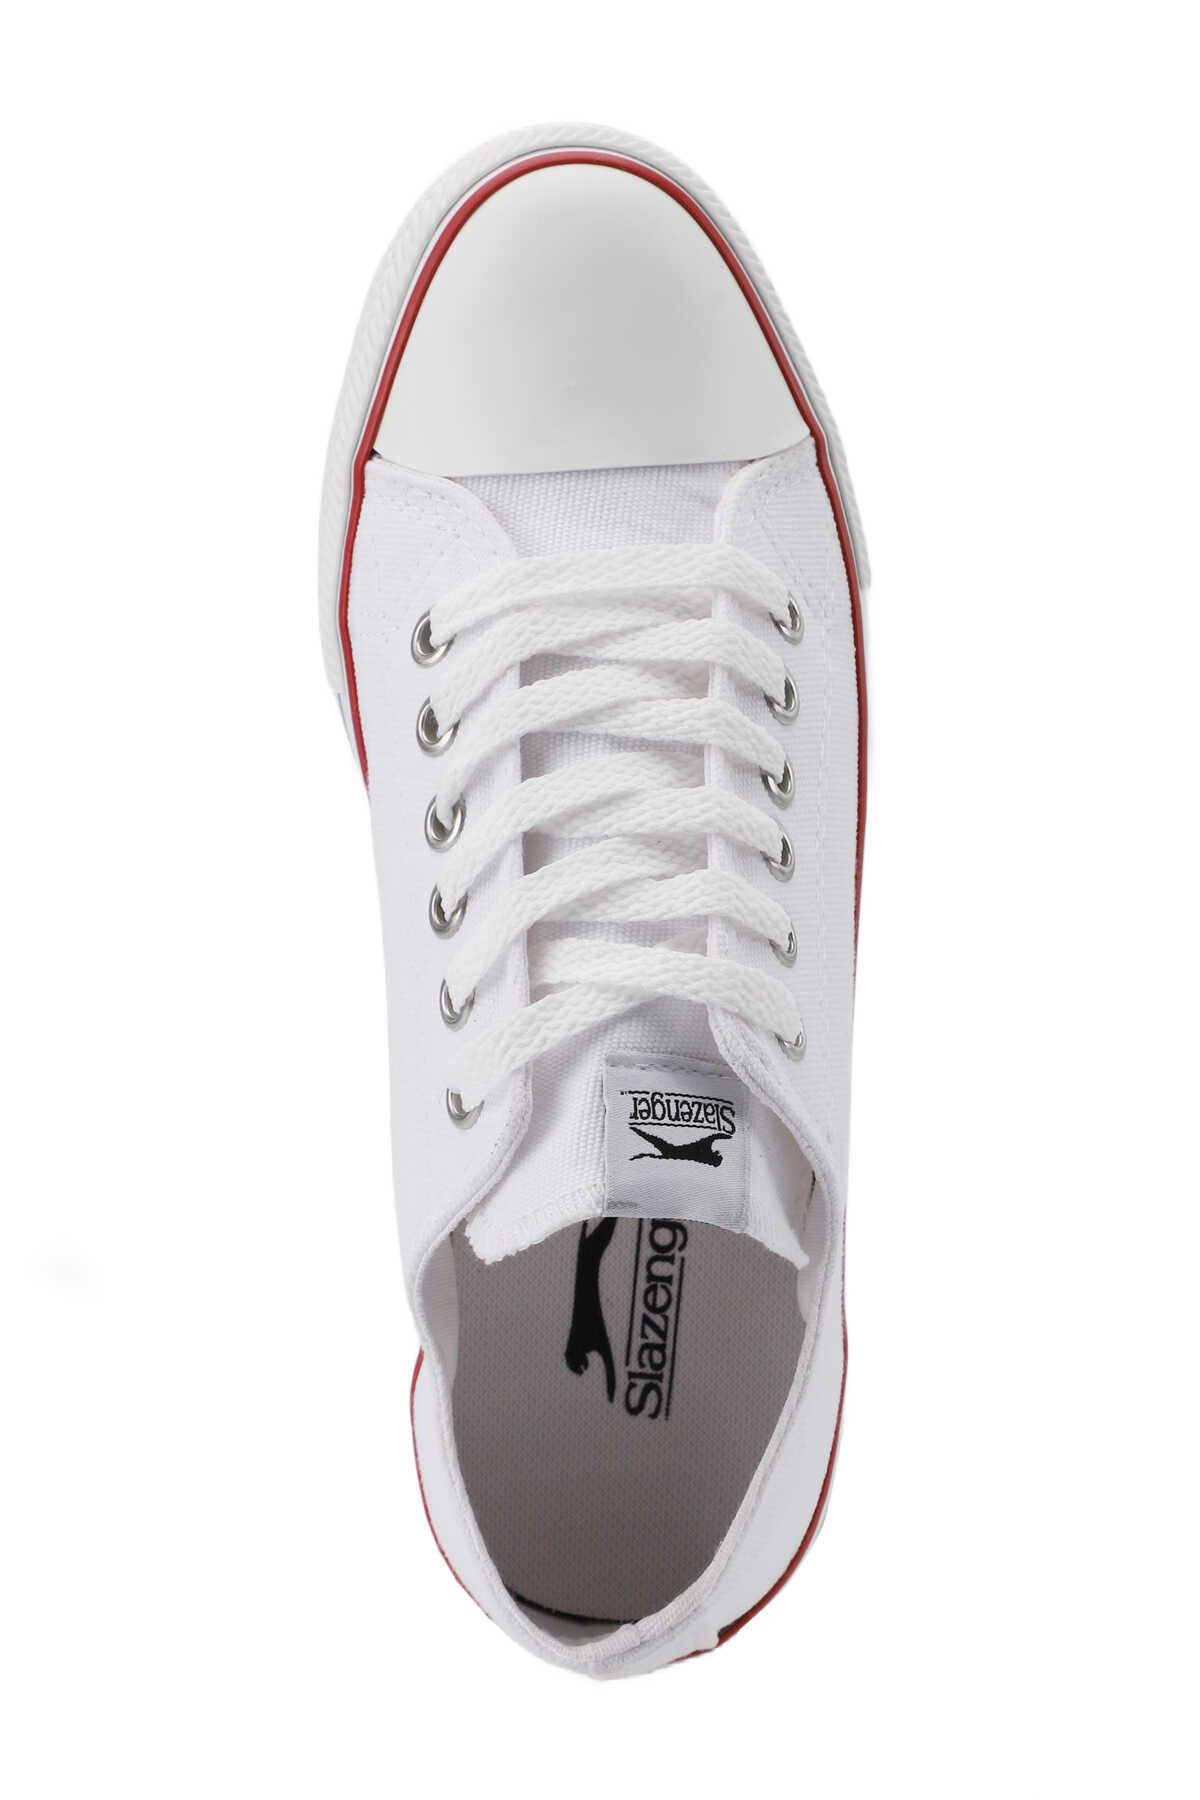 Slazenger SUN Sneaker Erkek Ayakkabı Beyaz